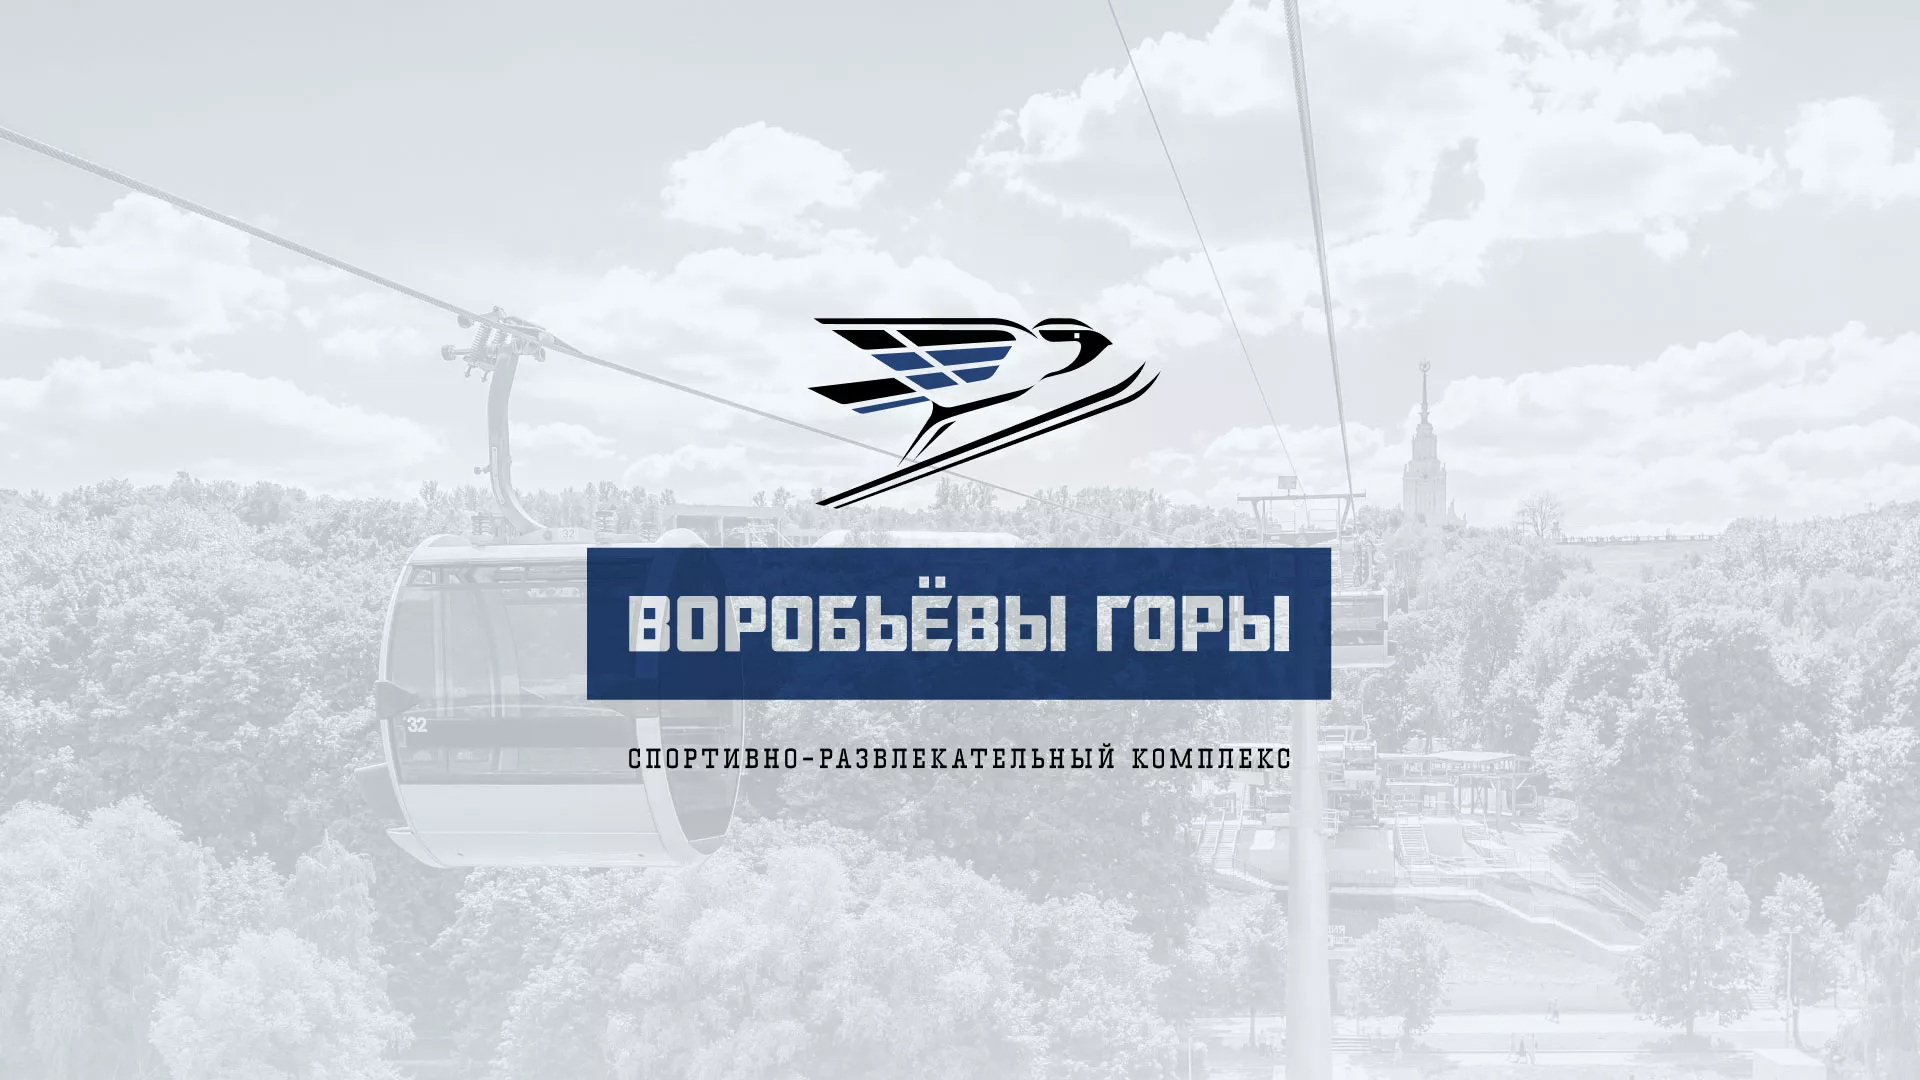 Разработка сайта в Лесозаводске для спортивно-развлекательного комплекса «Воробьёвы горы»